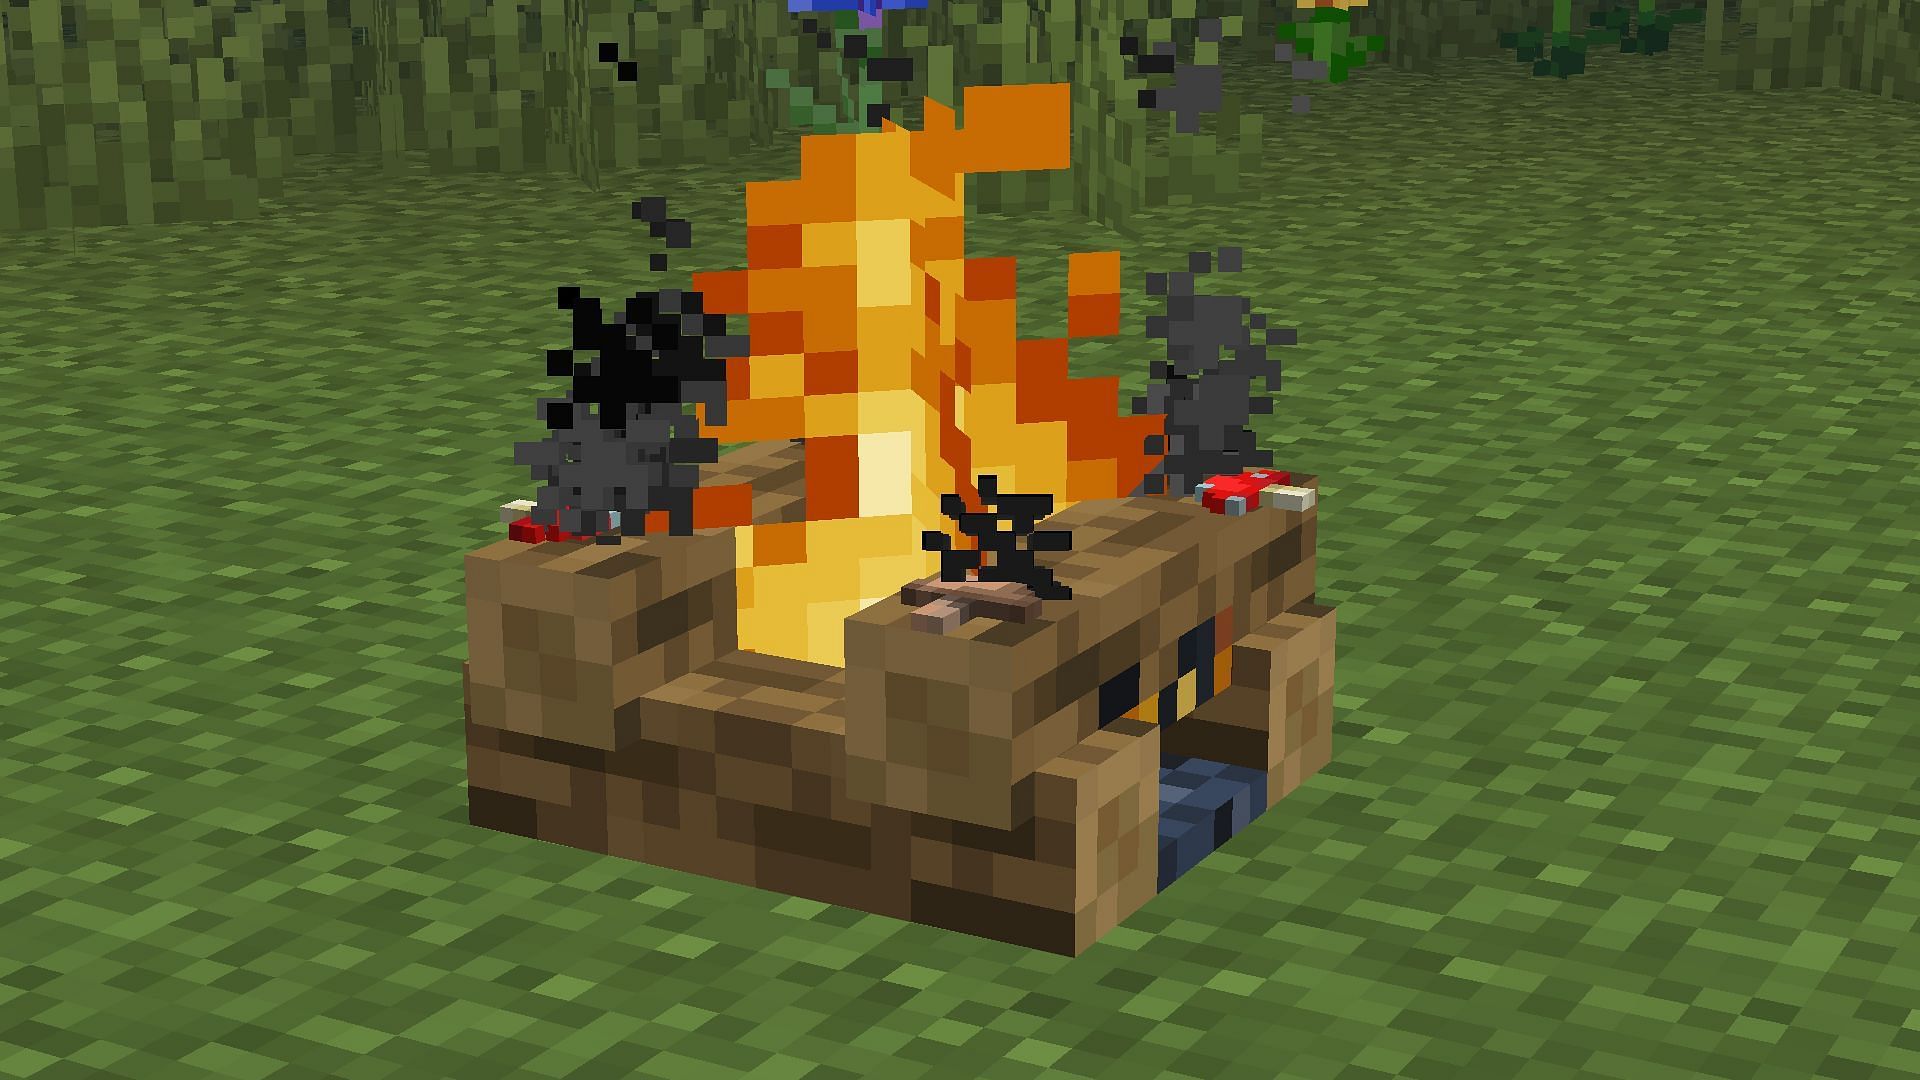 Campfire cooking food (Image via u/oscarthatnameistaken on Reddit)